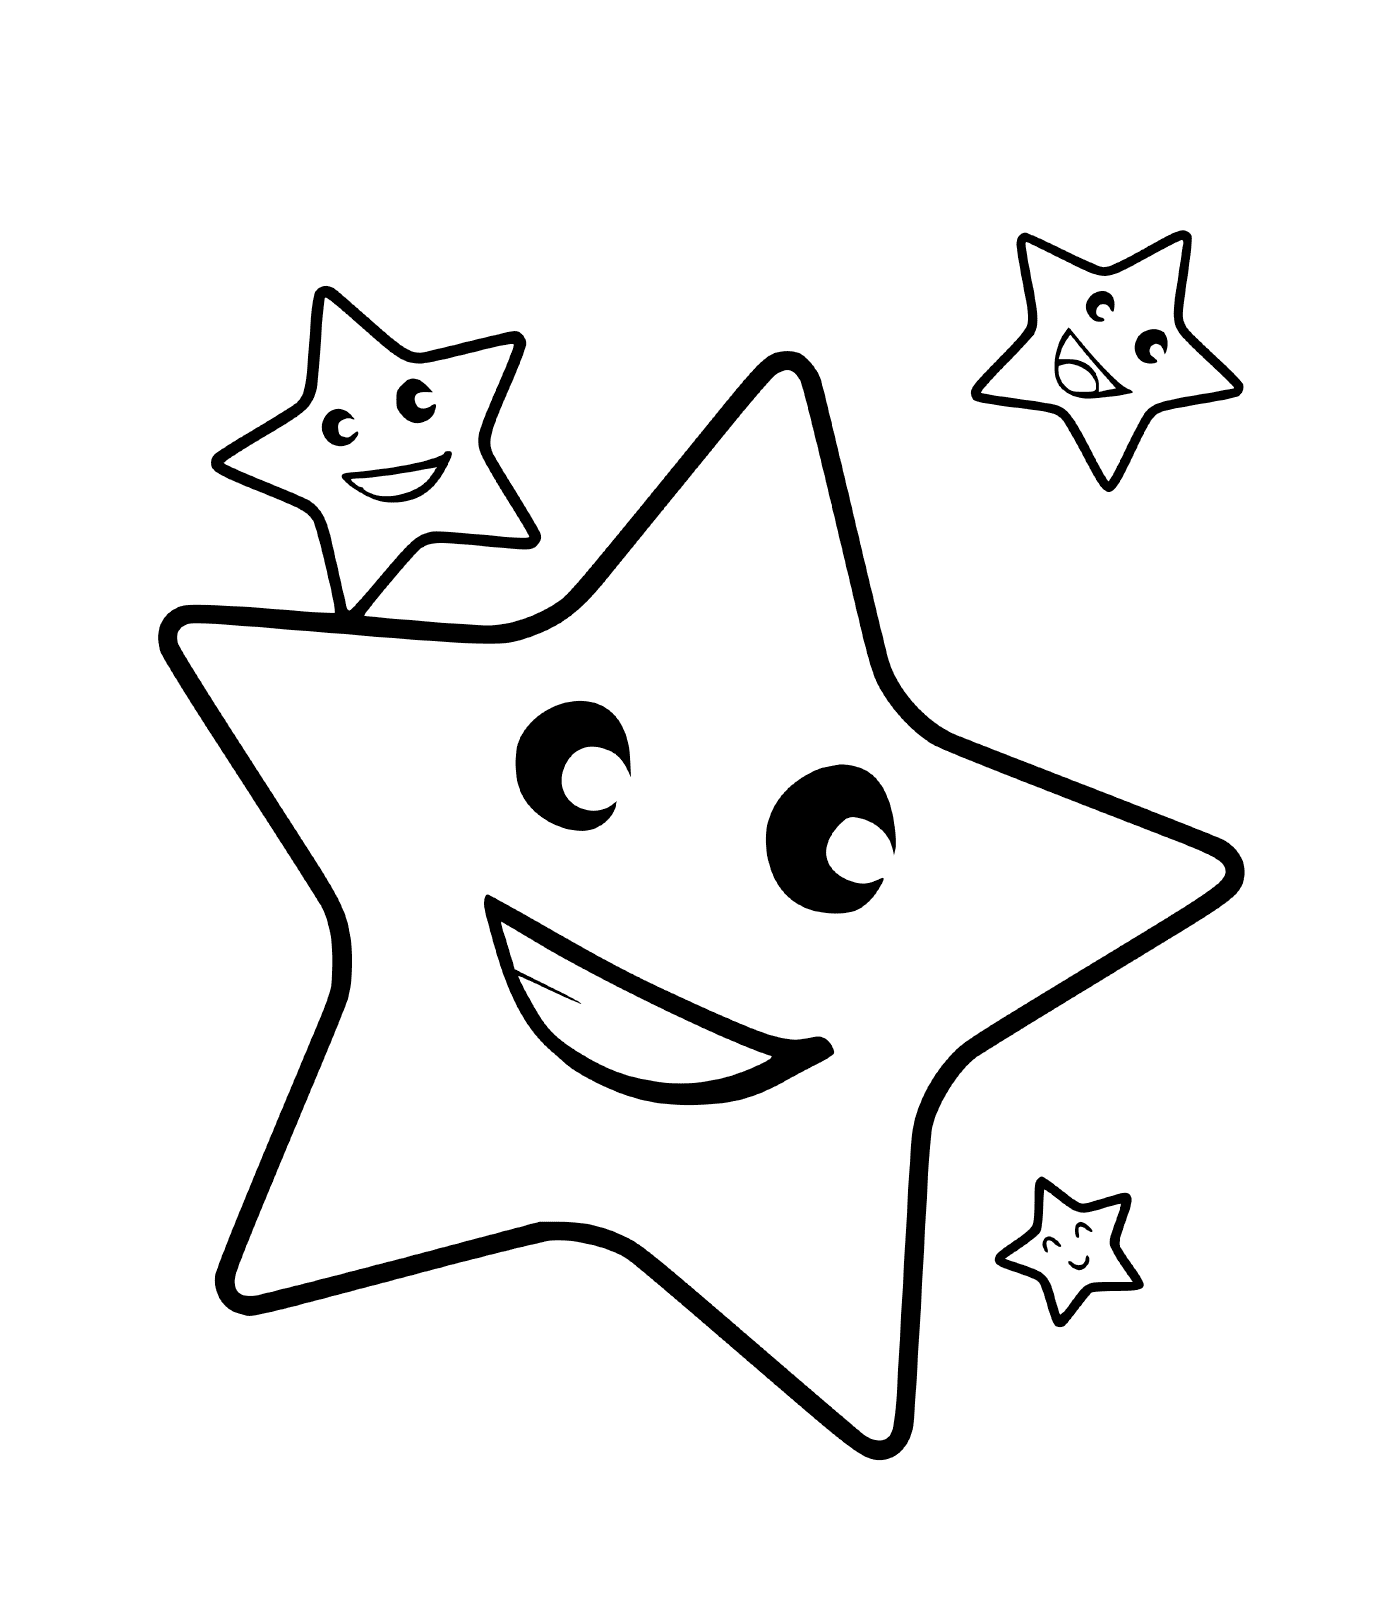  Ein Stern mit drei lächelnden Gesichtern 